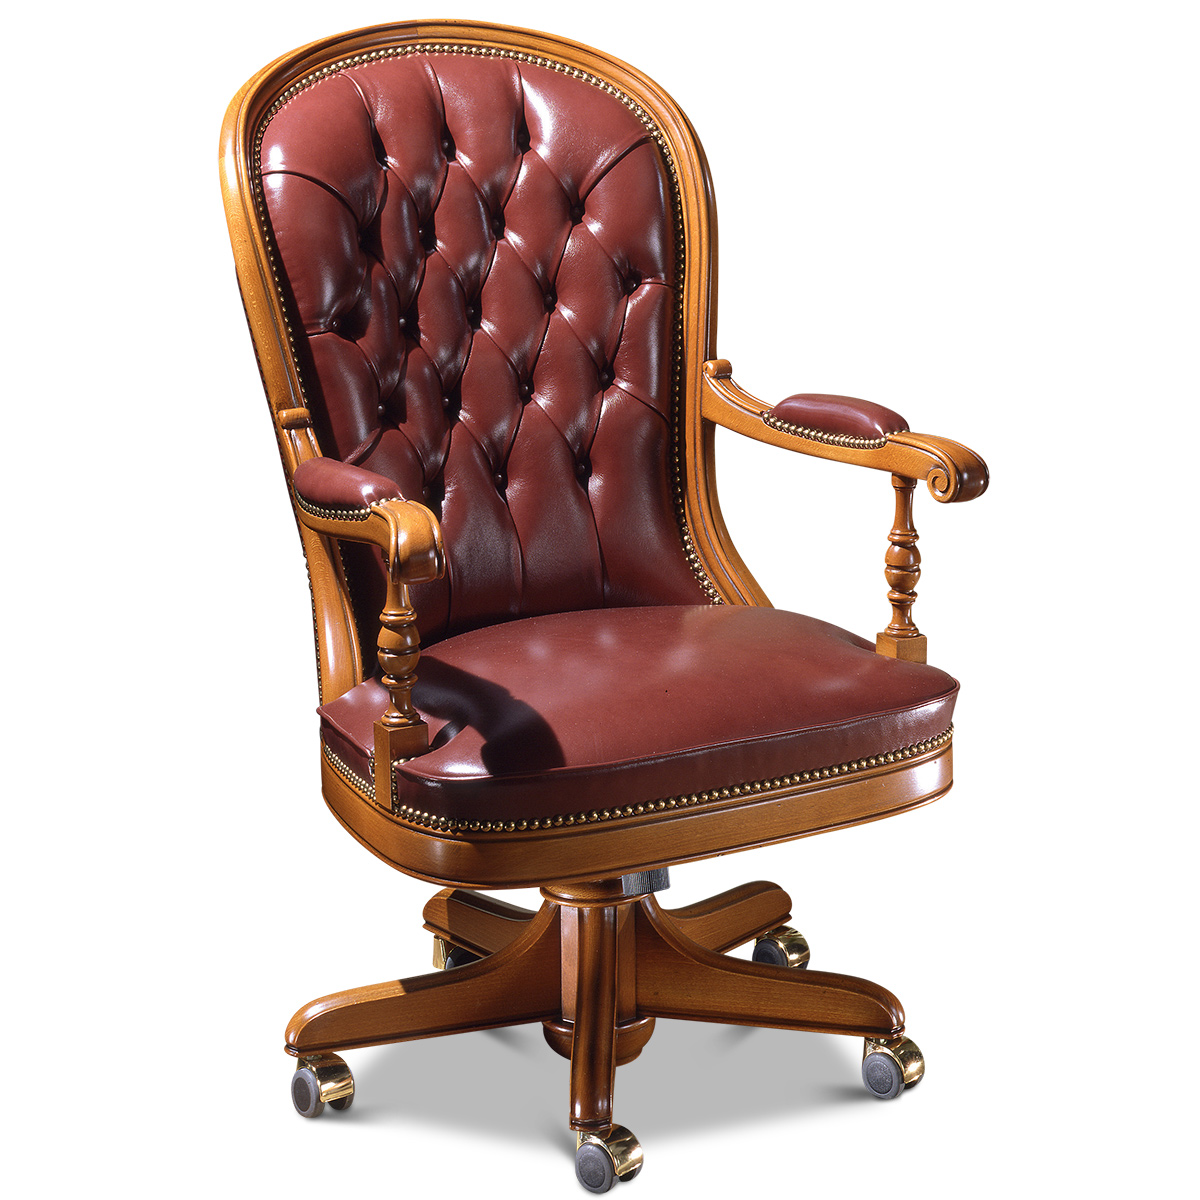 Office armchair “WASHINGTON” made in italy su misura